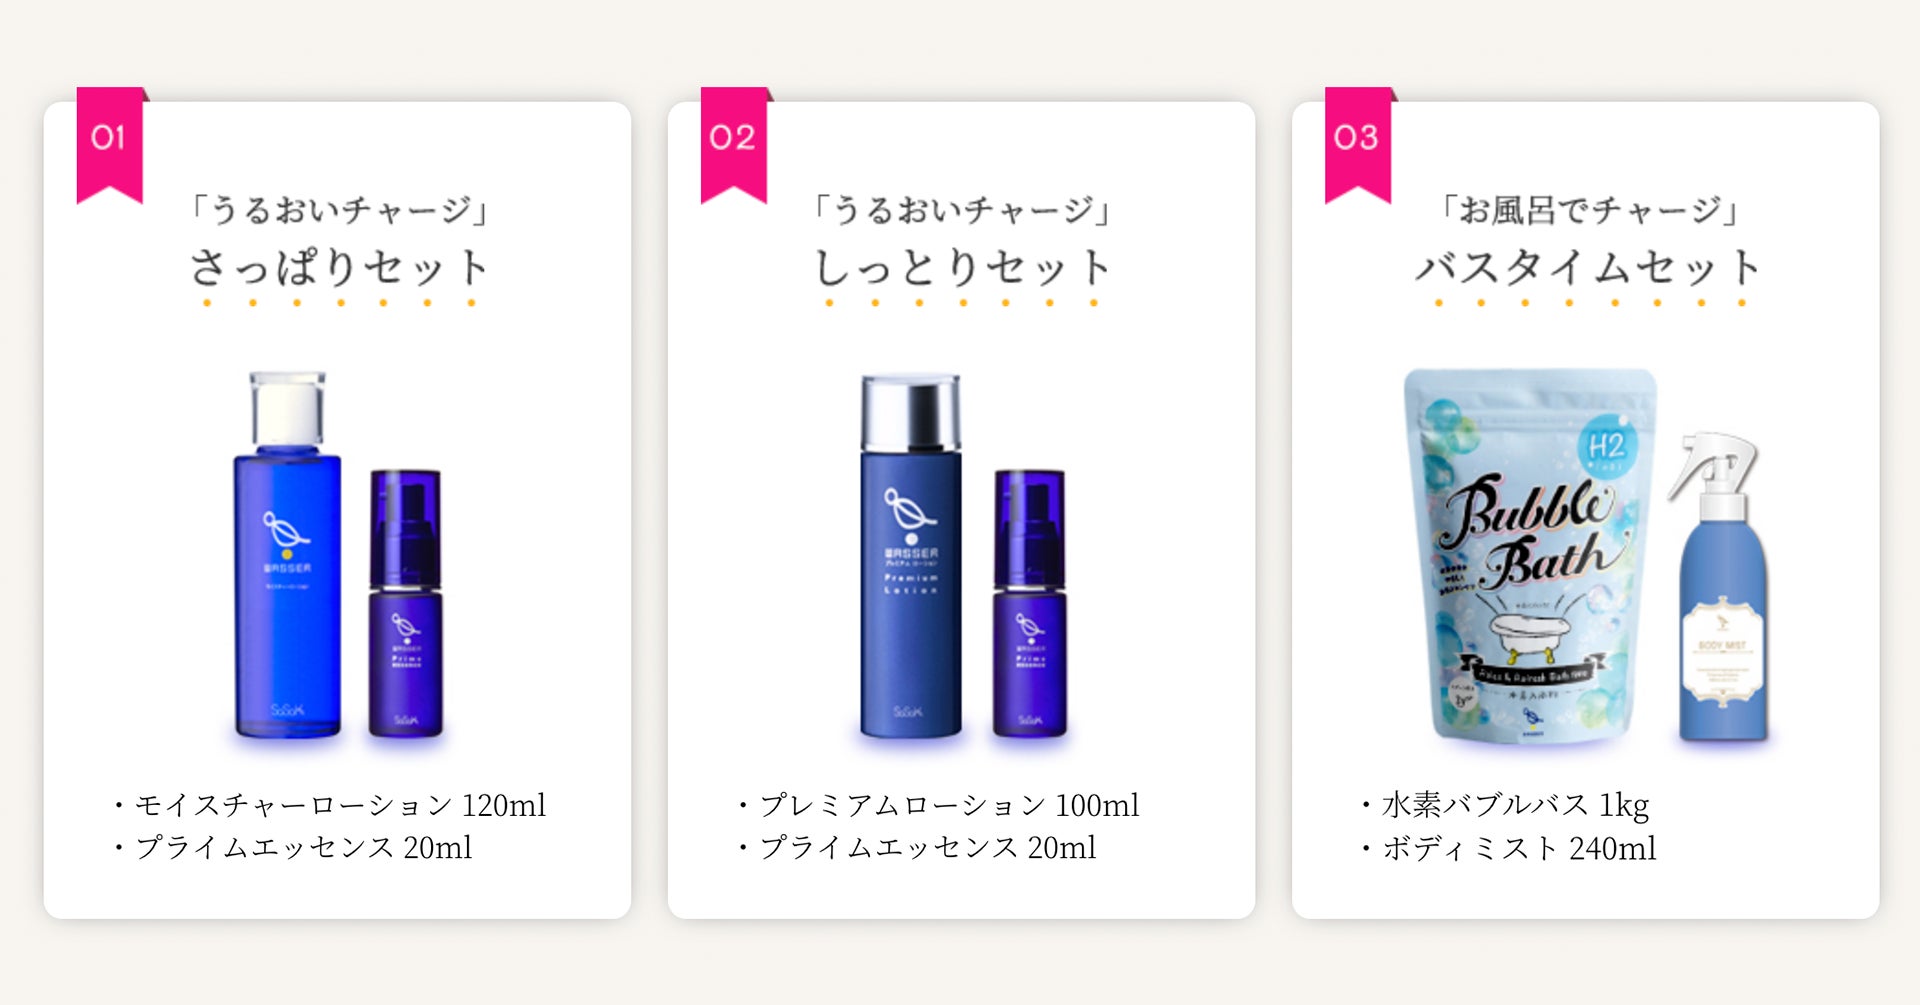 自然の力と発酵の力を活かした自然派化粧品「米ぬか美人」が、日本マーケティングリサーチ機構の調査で『日本酒コスメ人気 No.1』を獲得！